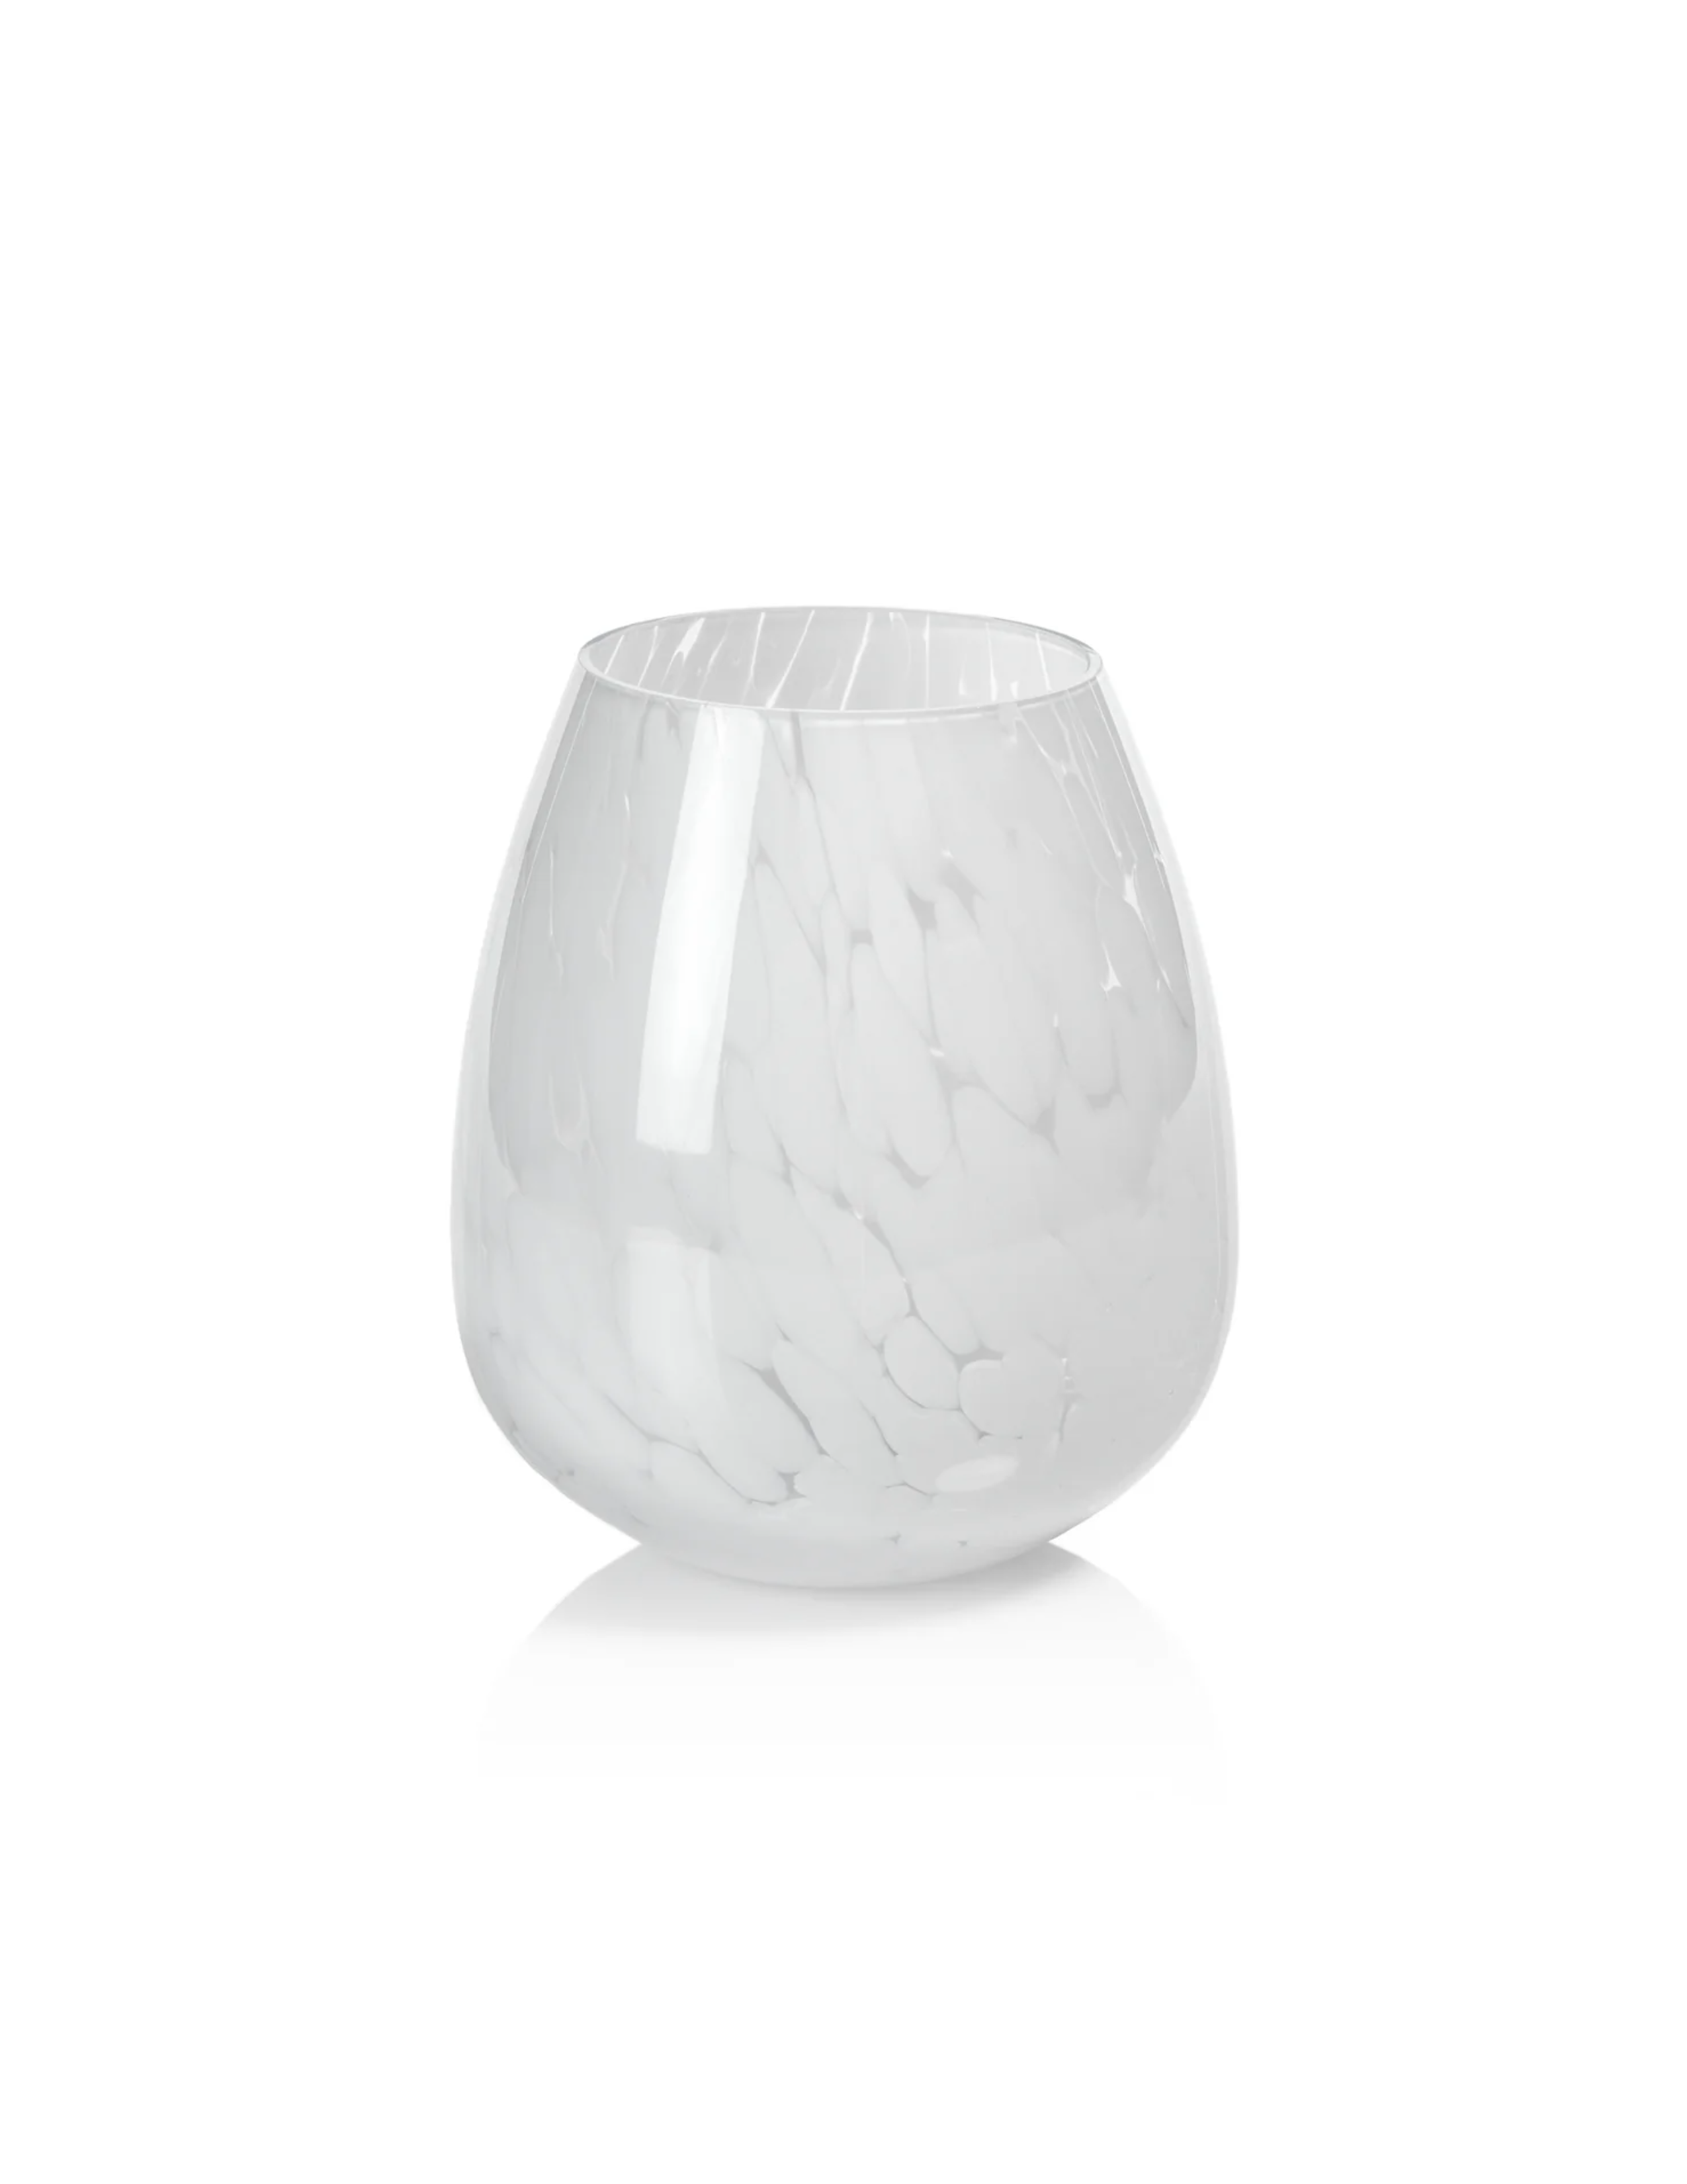 Liguria Confetti Vase - Small